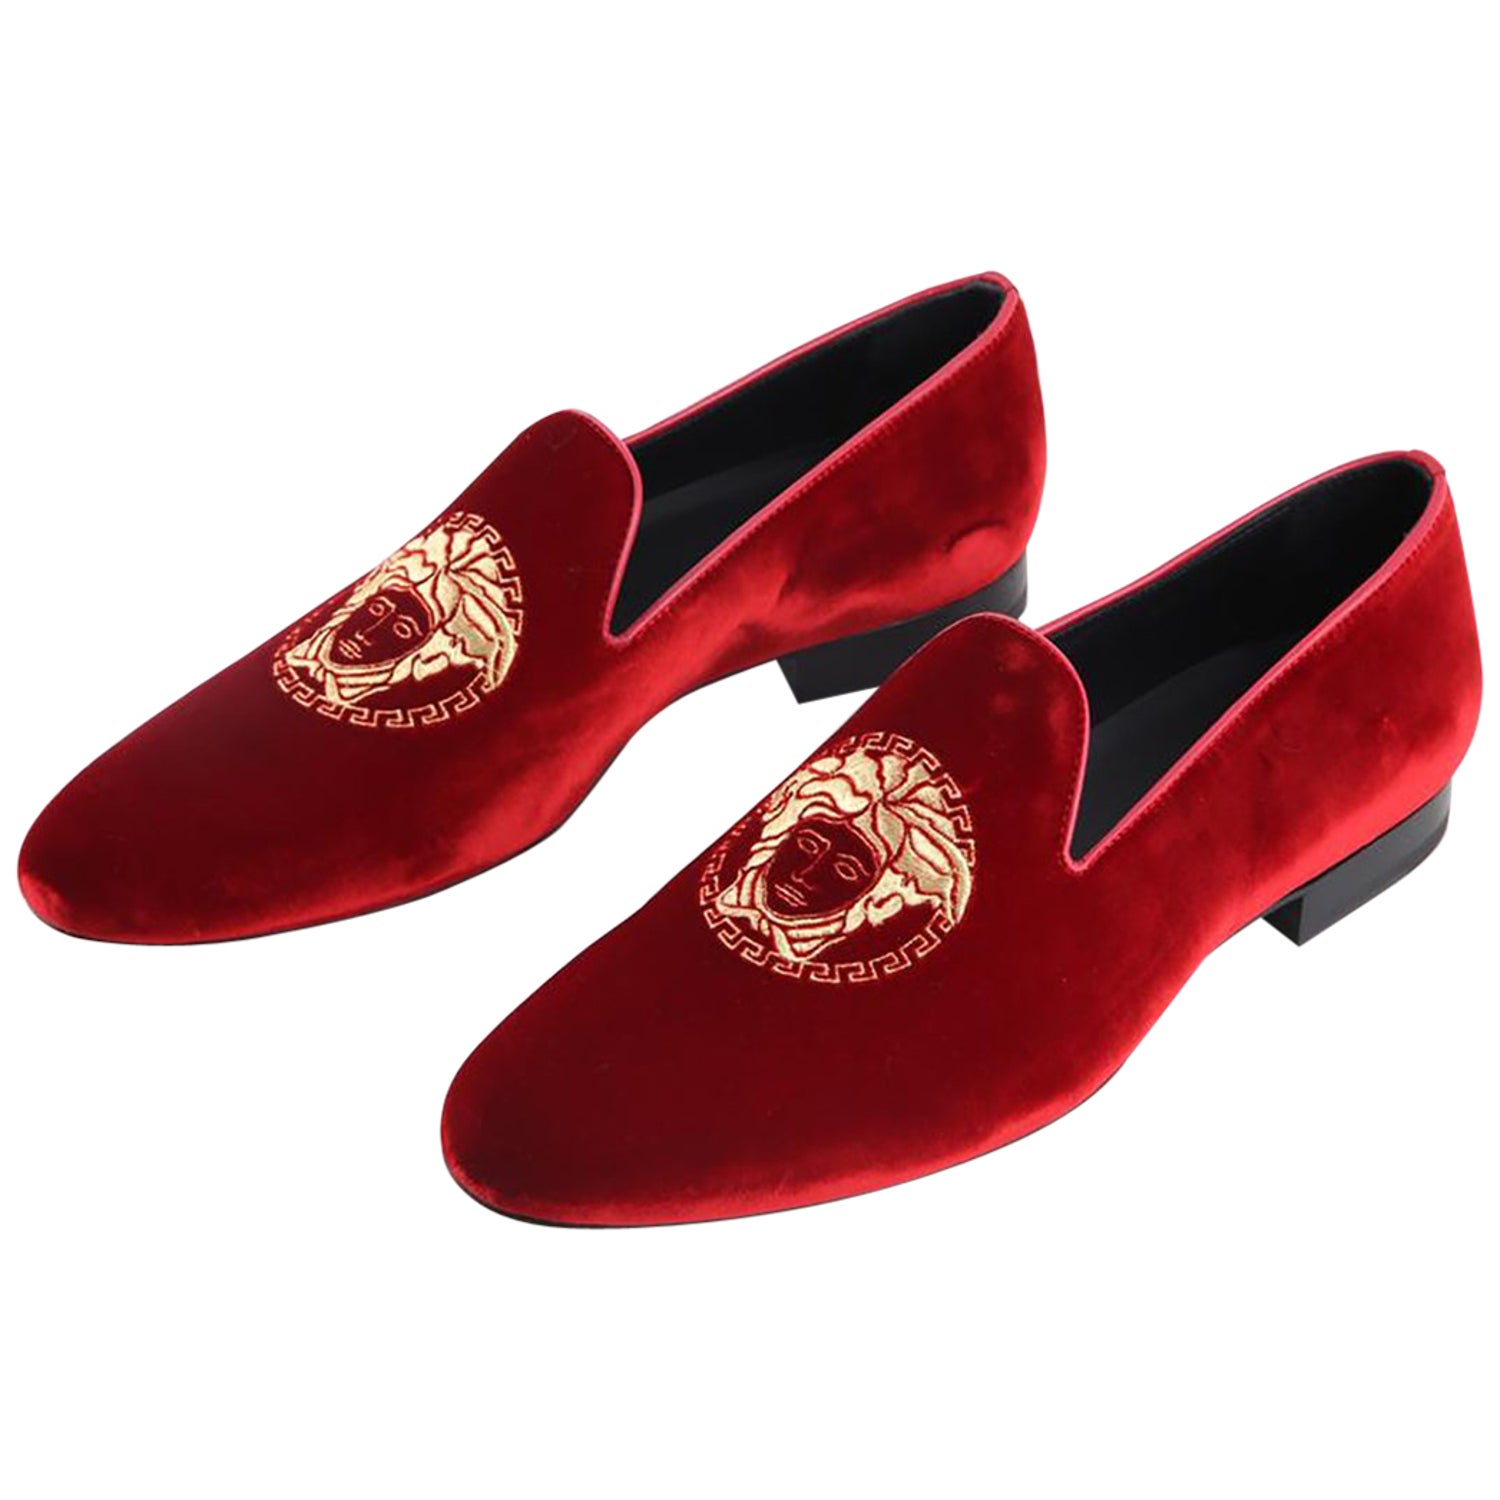 New VERSACE MEDUSA HEAD RED VELVET LOAFERS 42 - 9; 42.5 - 9.5 at 1stDibs |  red versace loafers, red velvet versace loafers, medusa velvet loafers